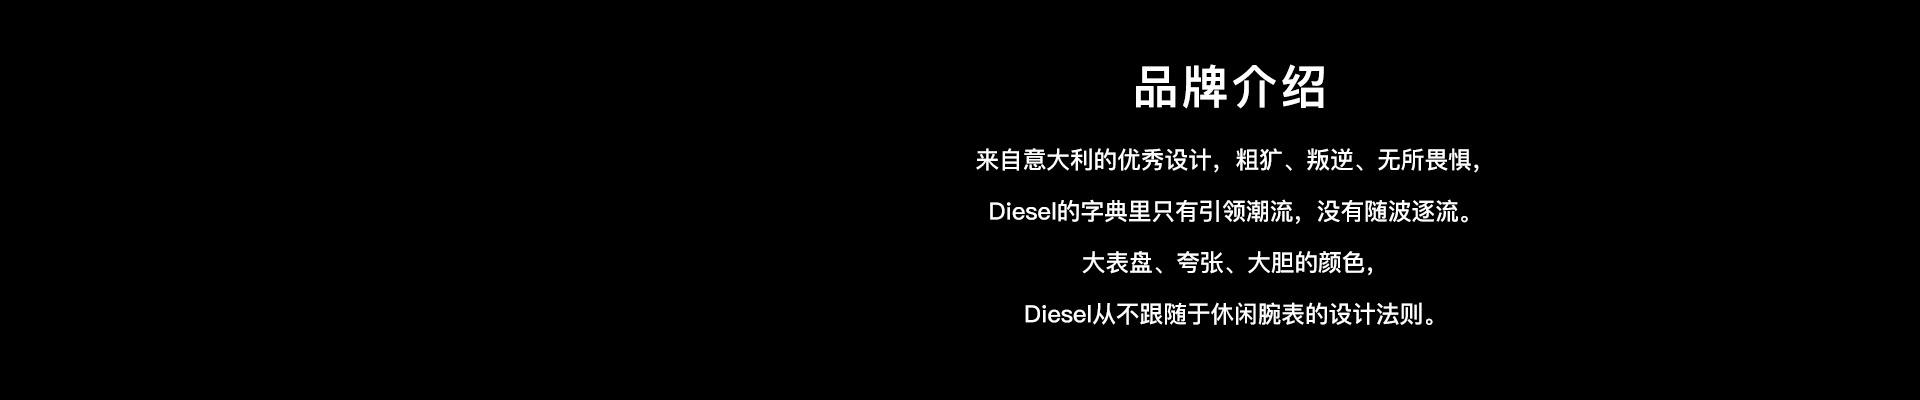  diesel首页_03.jpg